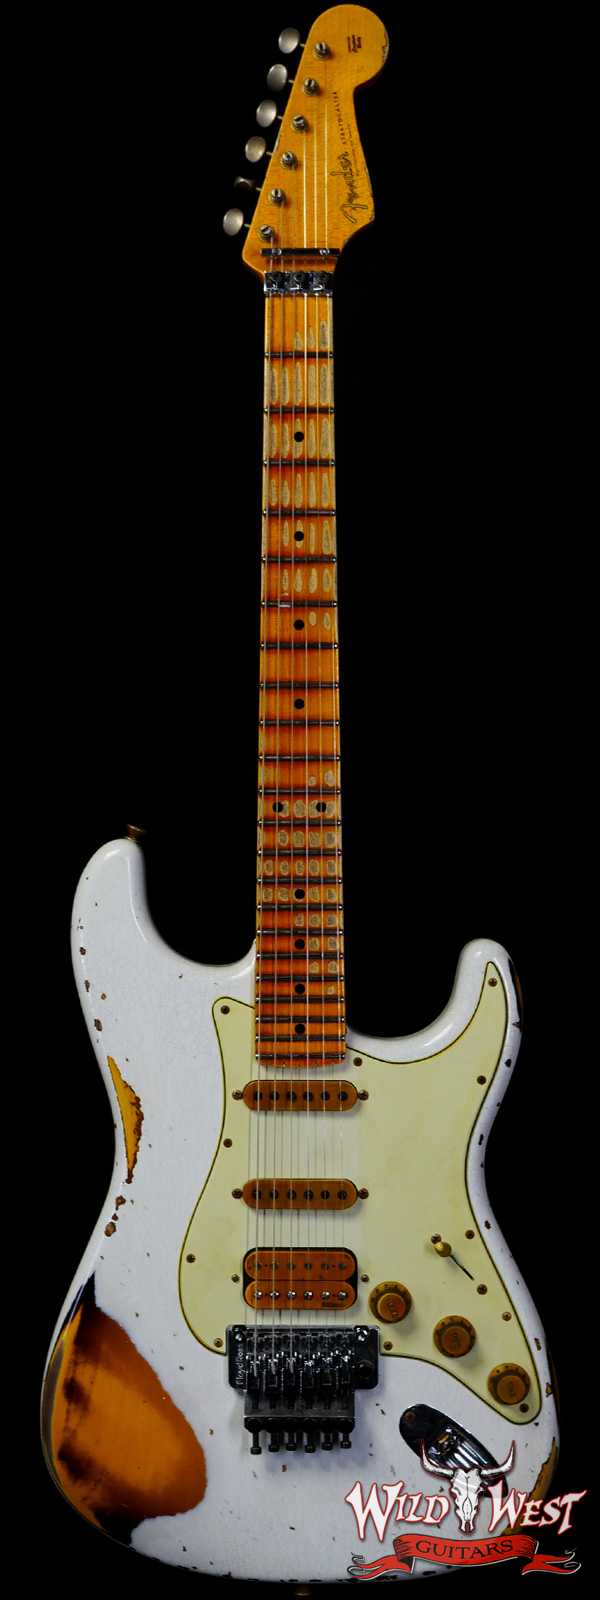 Fender Custom Shop Wild West White Lightning Stratocaster HSS Floyd Rose Maple Board 22 Frets Heavy Relic 2 Tone Sunburst